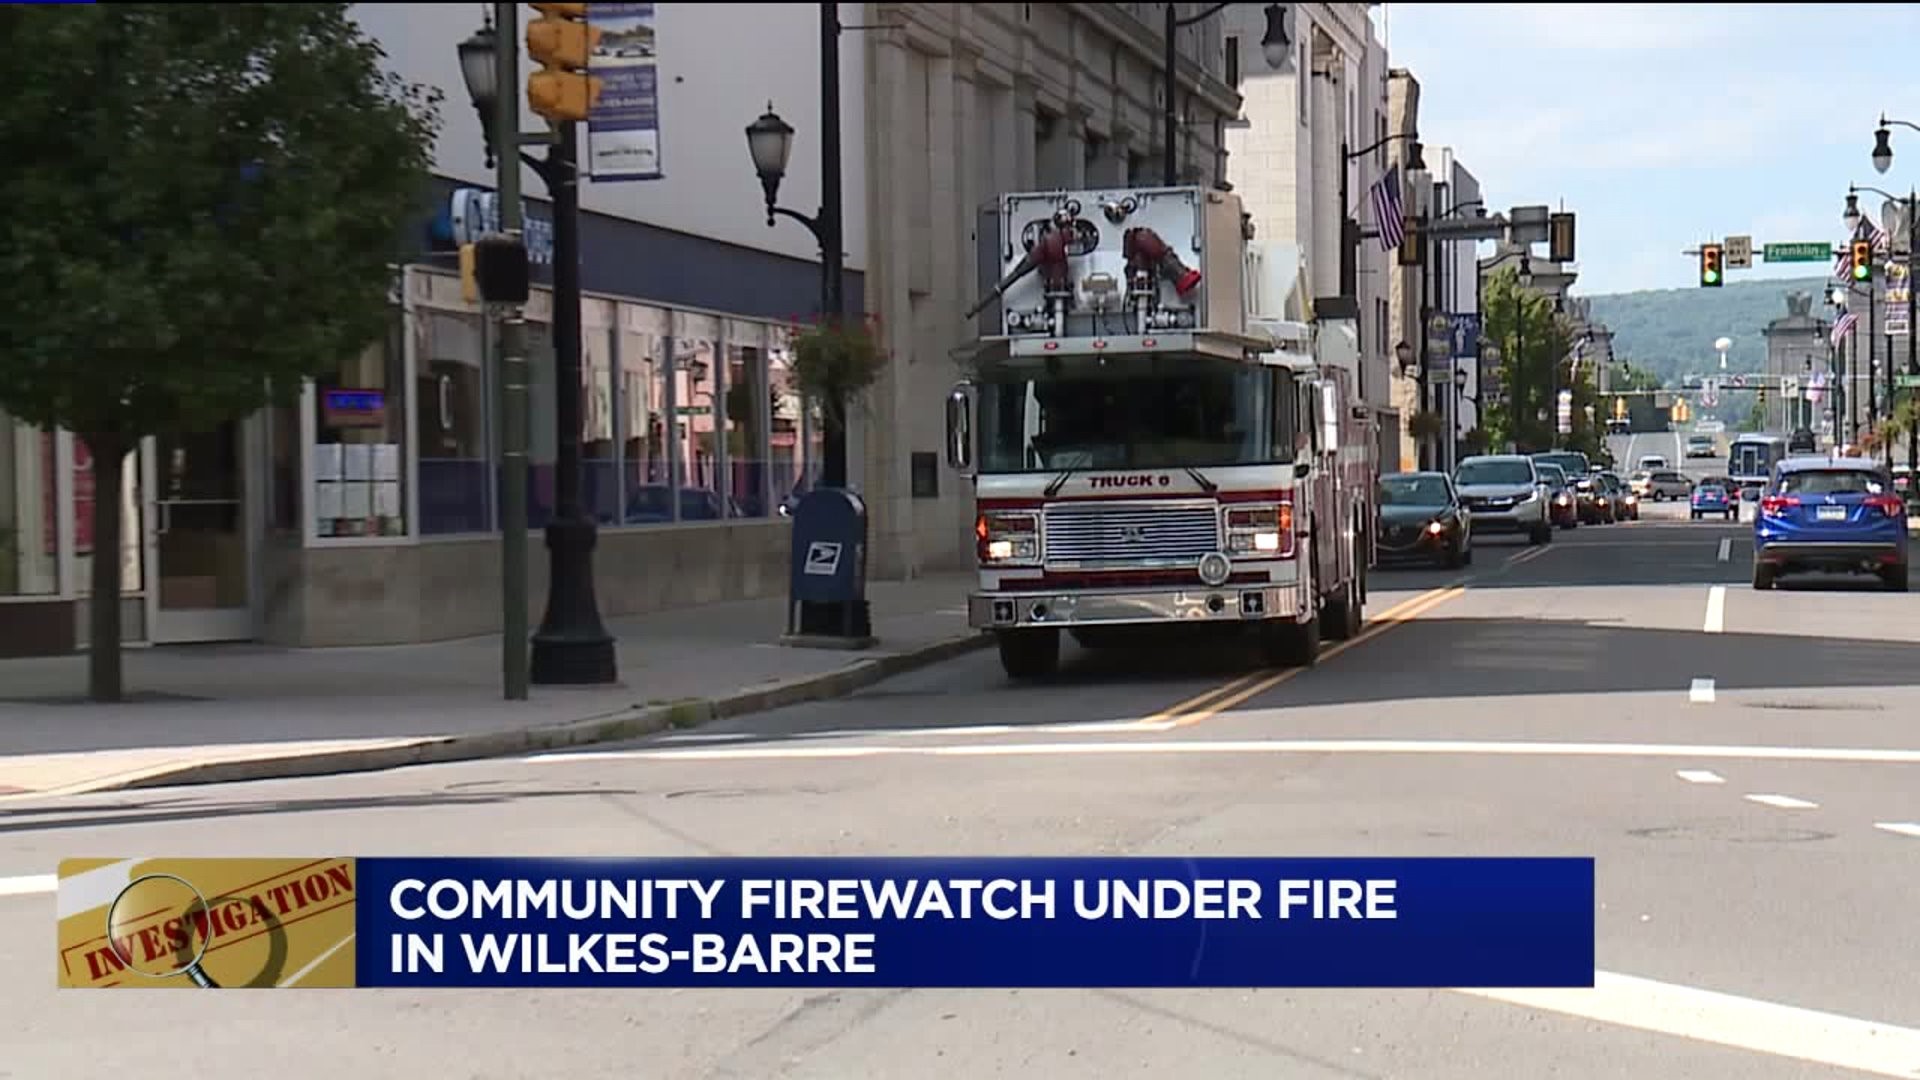 Community Firewatch Program Under Fire in Wilkes-Barre